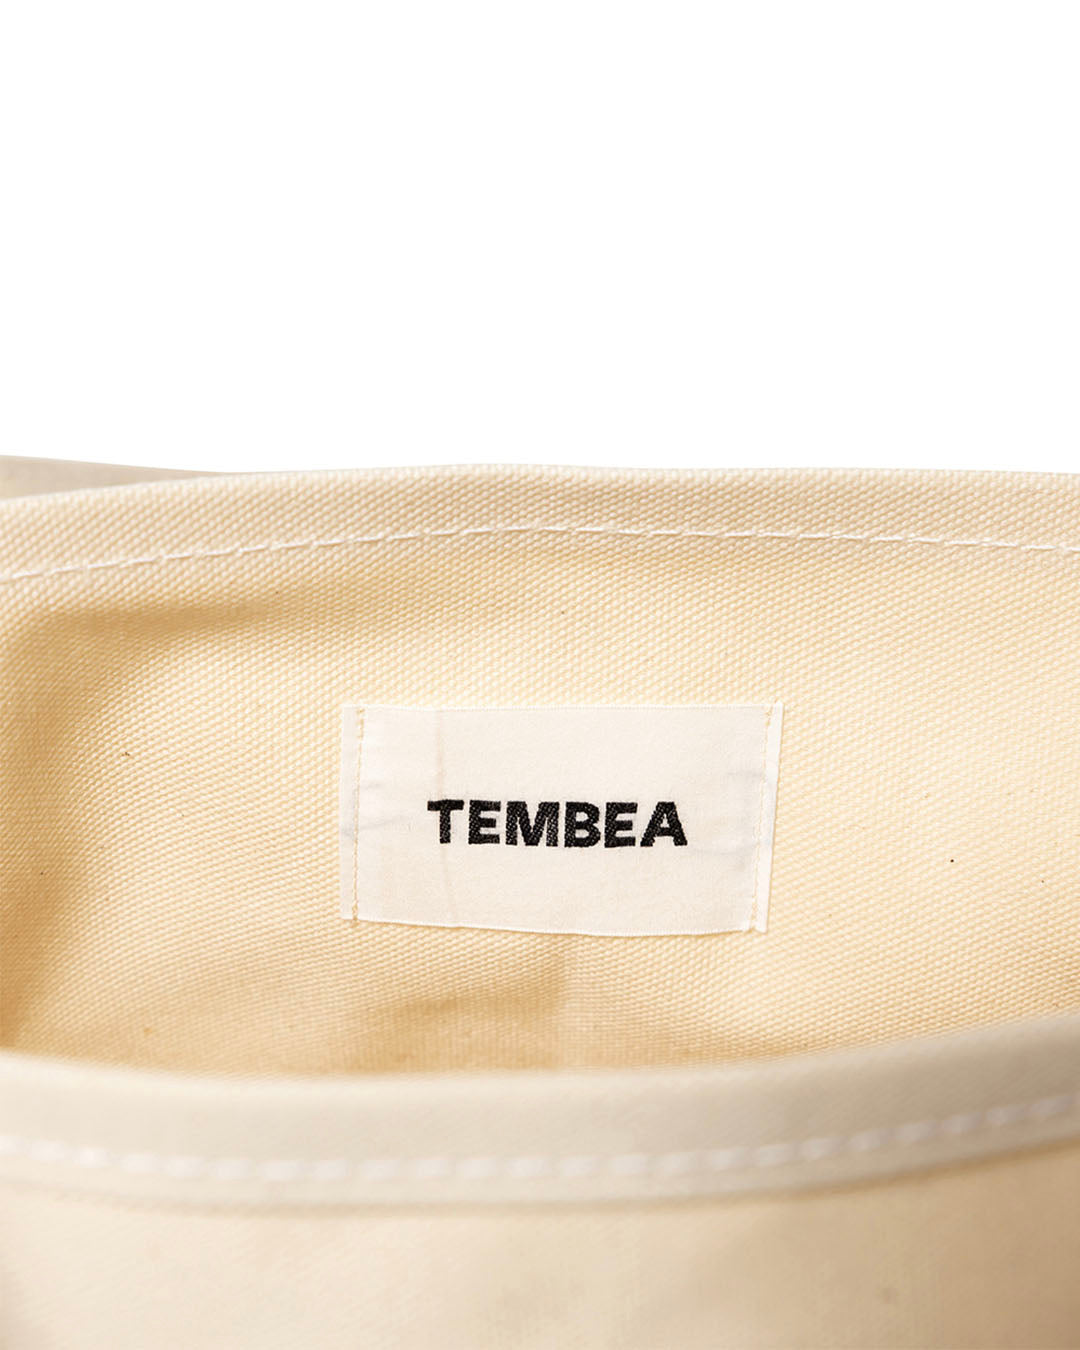 【LQQK STUDIO】TEMBEA TOTE BAG - OFF WHITE